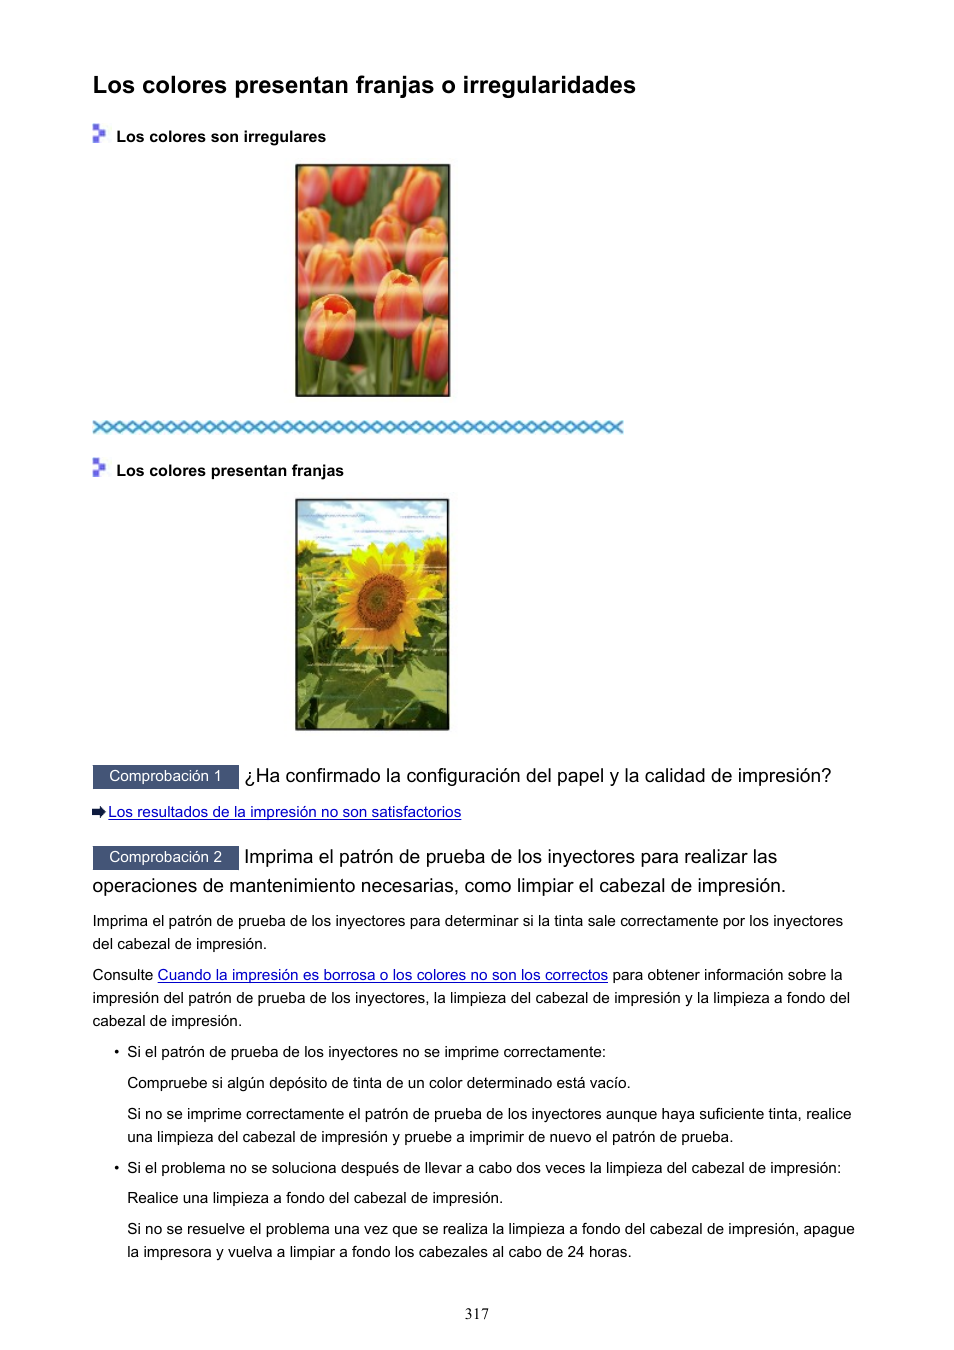 Los colores presentan franjas o irregularidades | Canon PIXMA iP8750 Manual del usuario | Página 317 / 421